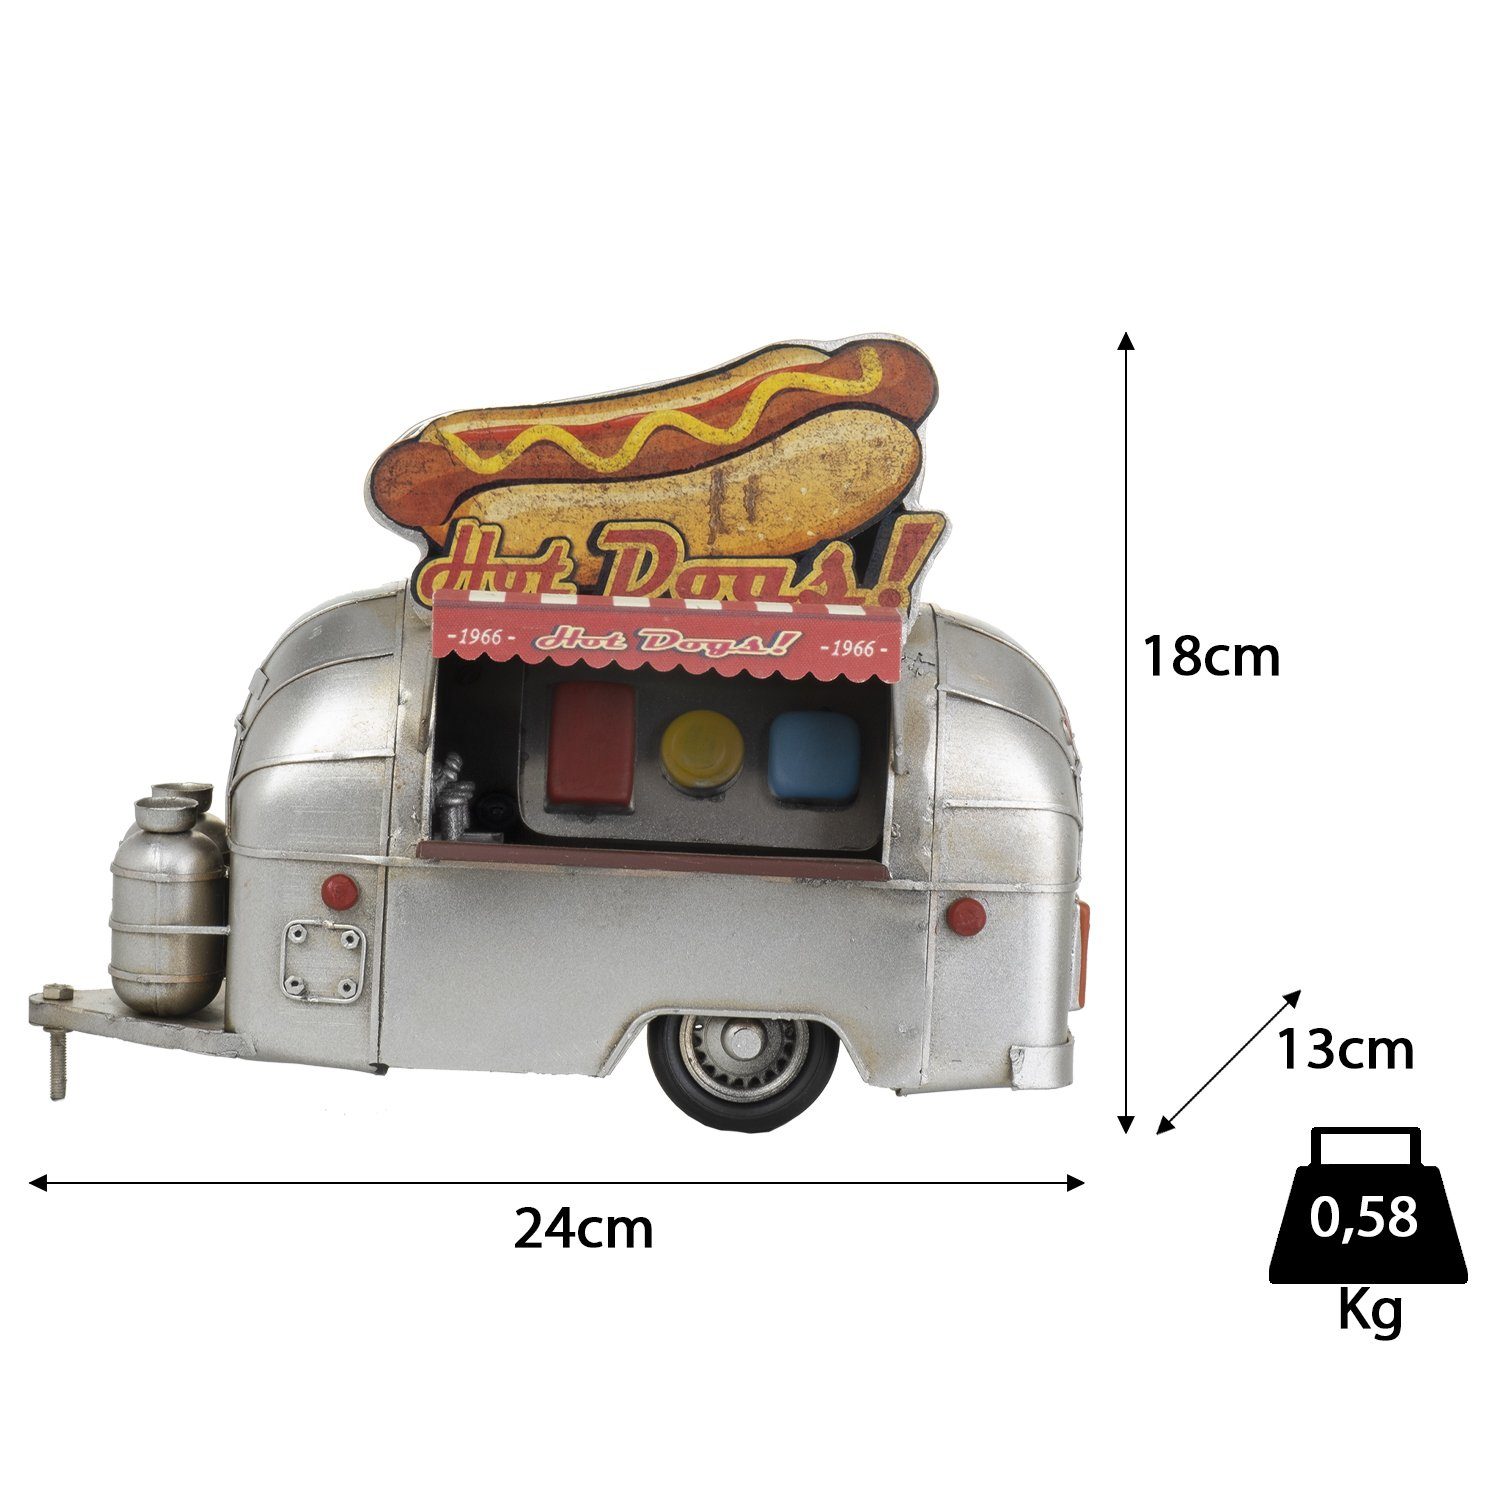 Moritz Dekoobjekt Blech-Deko Hot-Dog Stand Wohnwagen, Modell Antik-Stil Nostalgie Blechmodell Retro Miniatur Anhänger Nachbildung